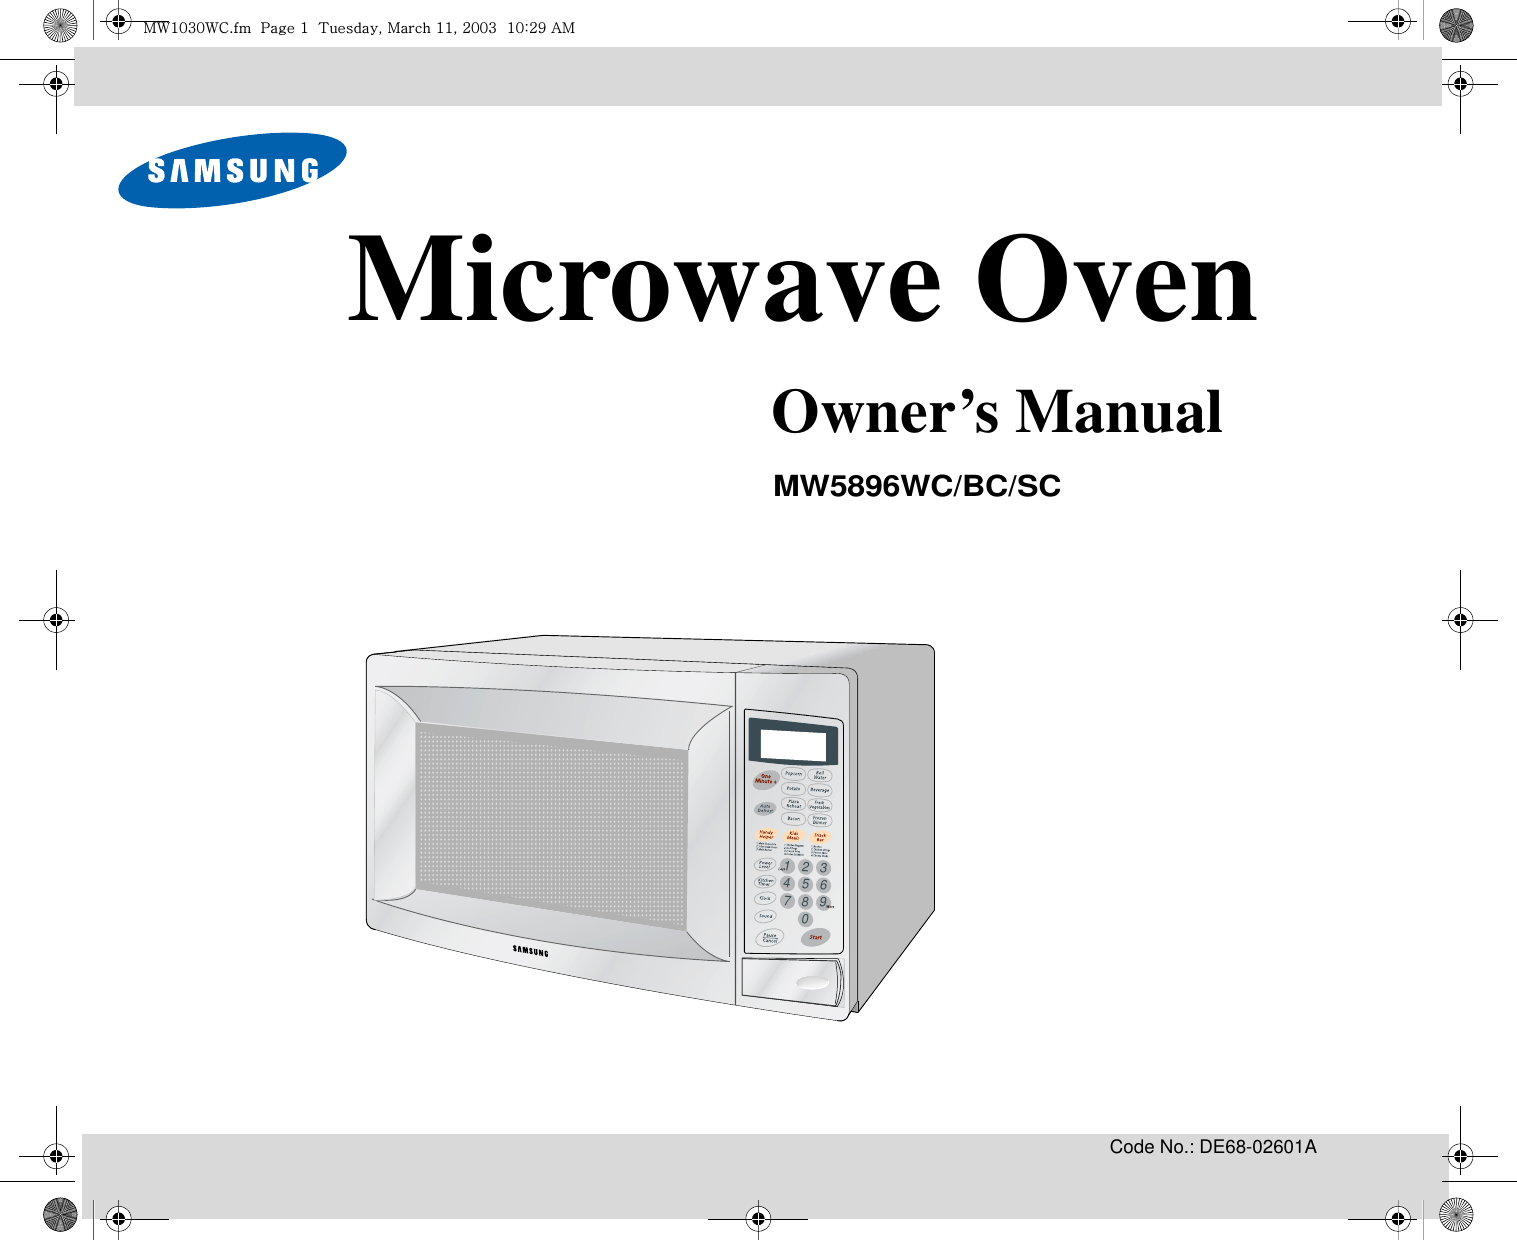 Code No.: DE68-02601A3216549870Microwave OvenOwner’s ManualMW5896WC/BC/SCt~XWZW~jUGGwGXGG{SGtGXXSGYWWZGGXWaY`Ght